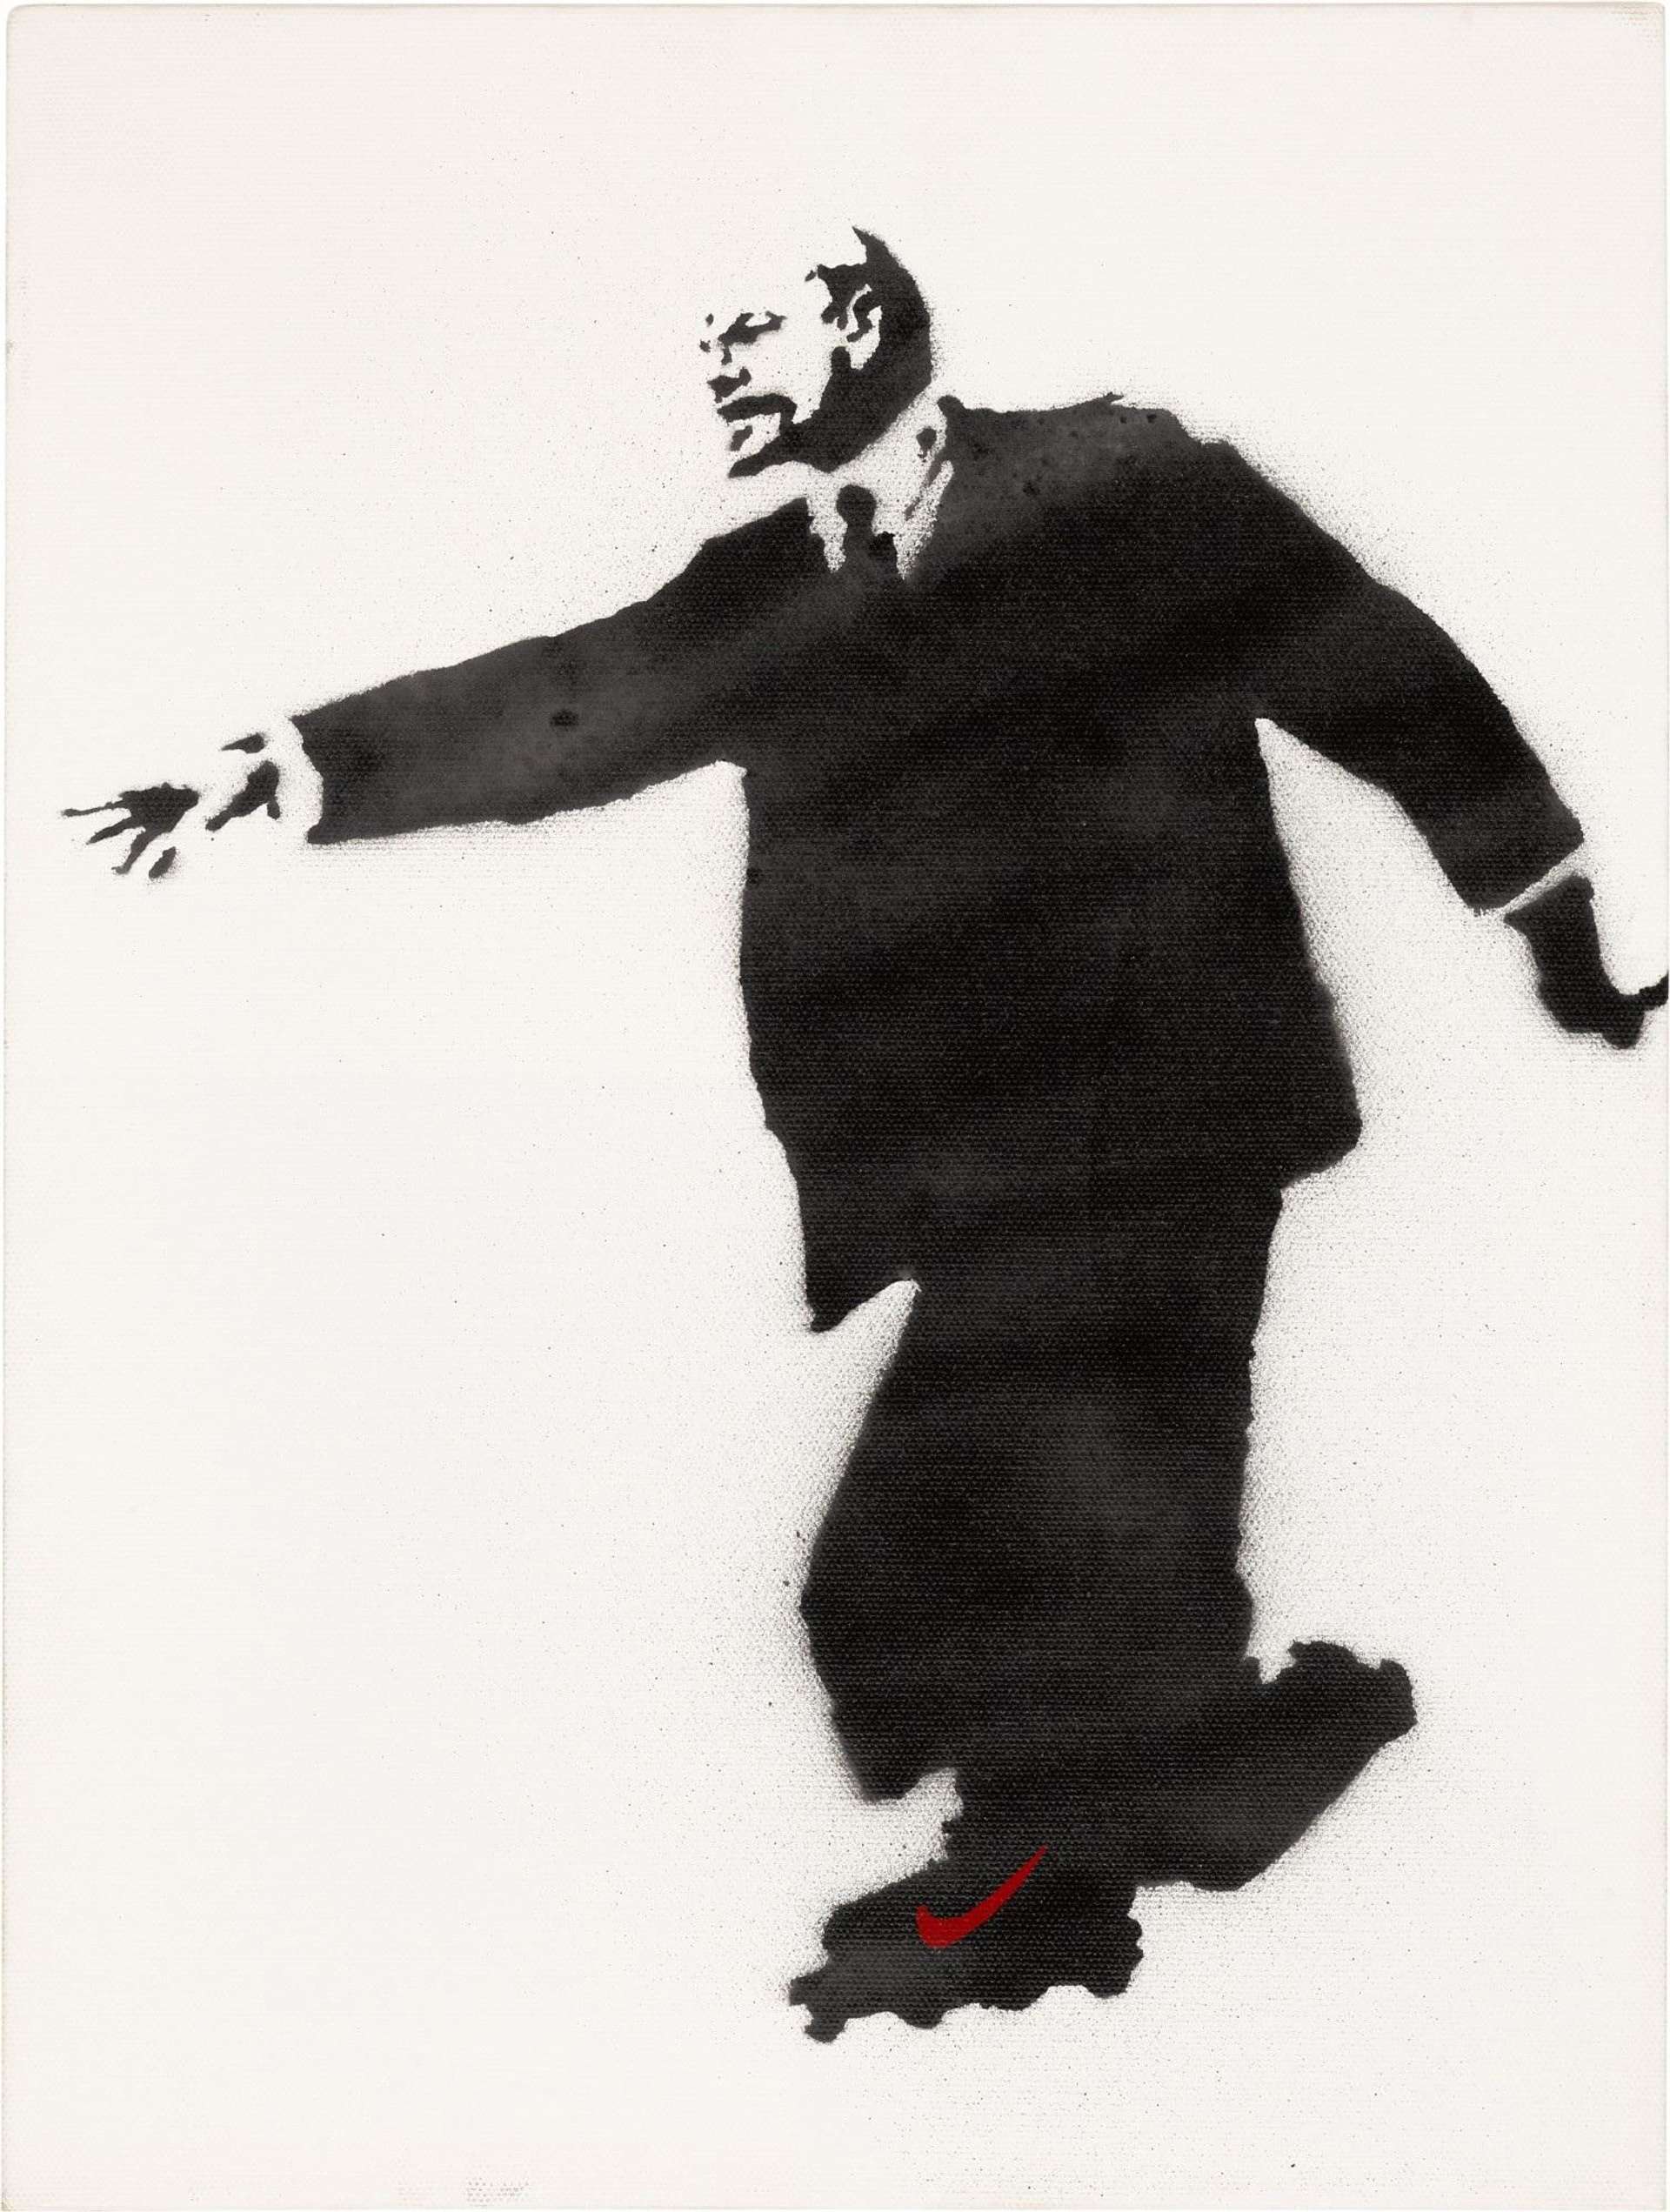 Lenin On Roller Skates (white) - Mixed Media by Banksy 2003 - MyArtBroker